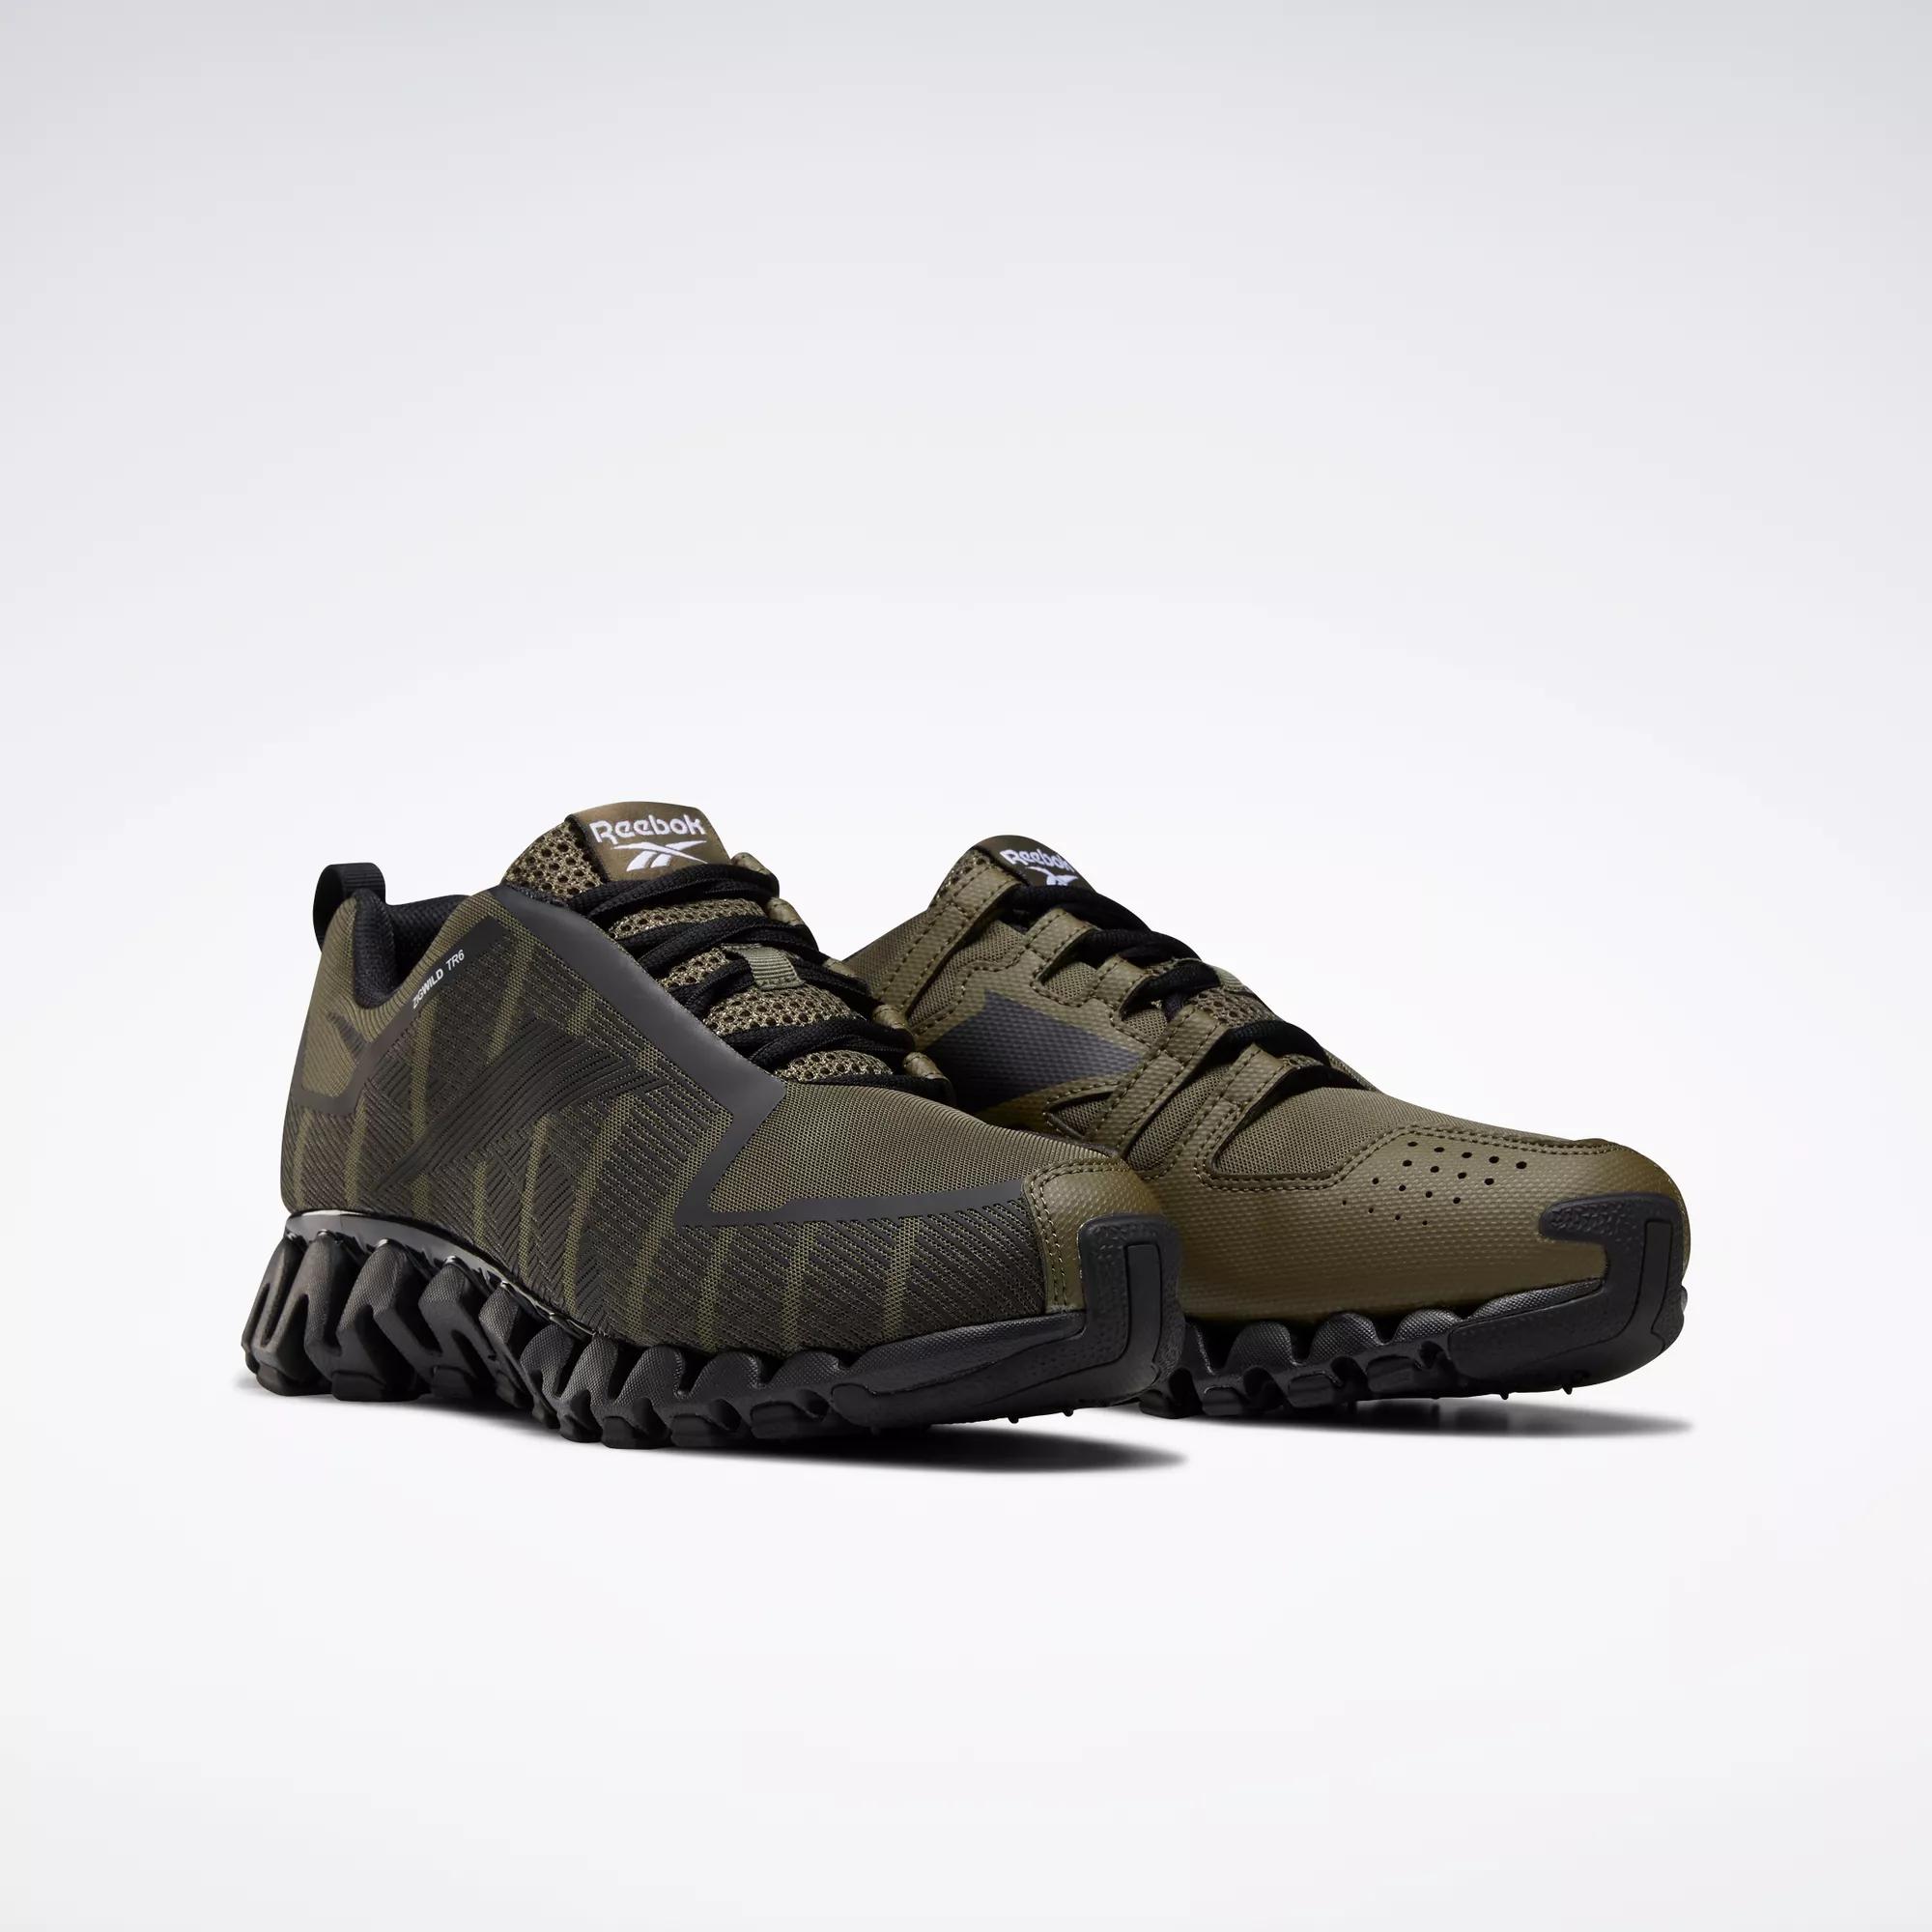 ZigWild 6 Men's Shoes - Army Green Core Black / Ftwr | Reebok